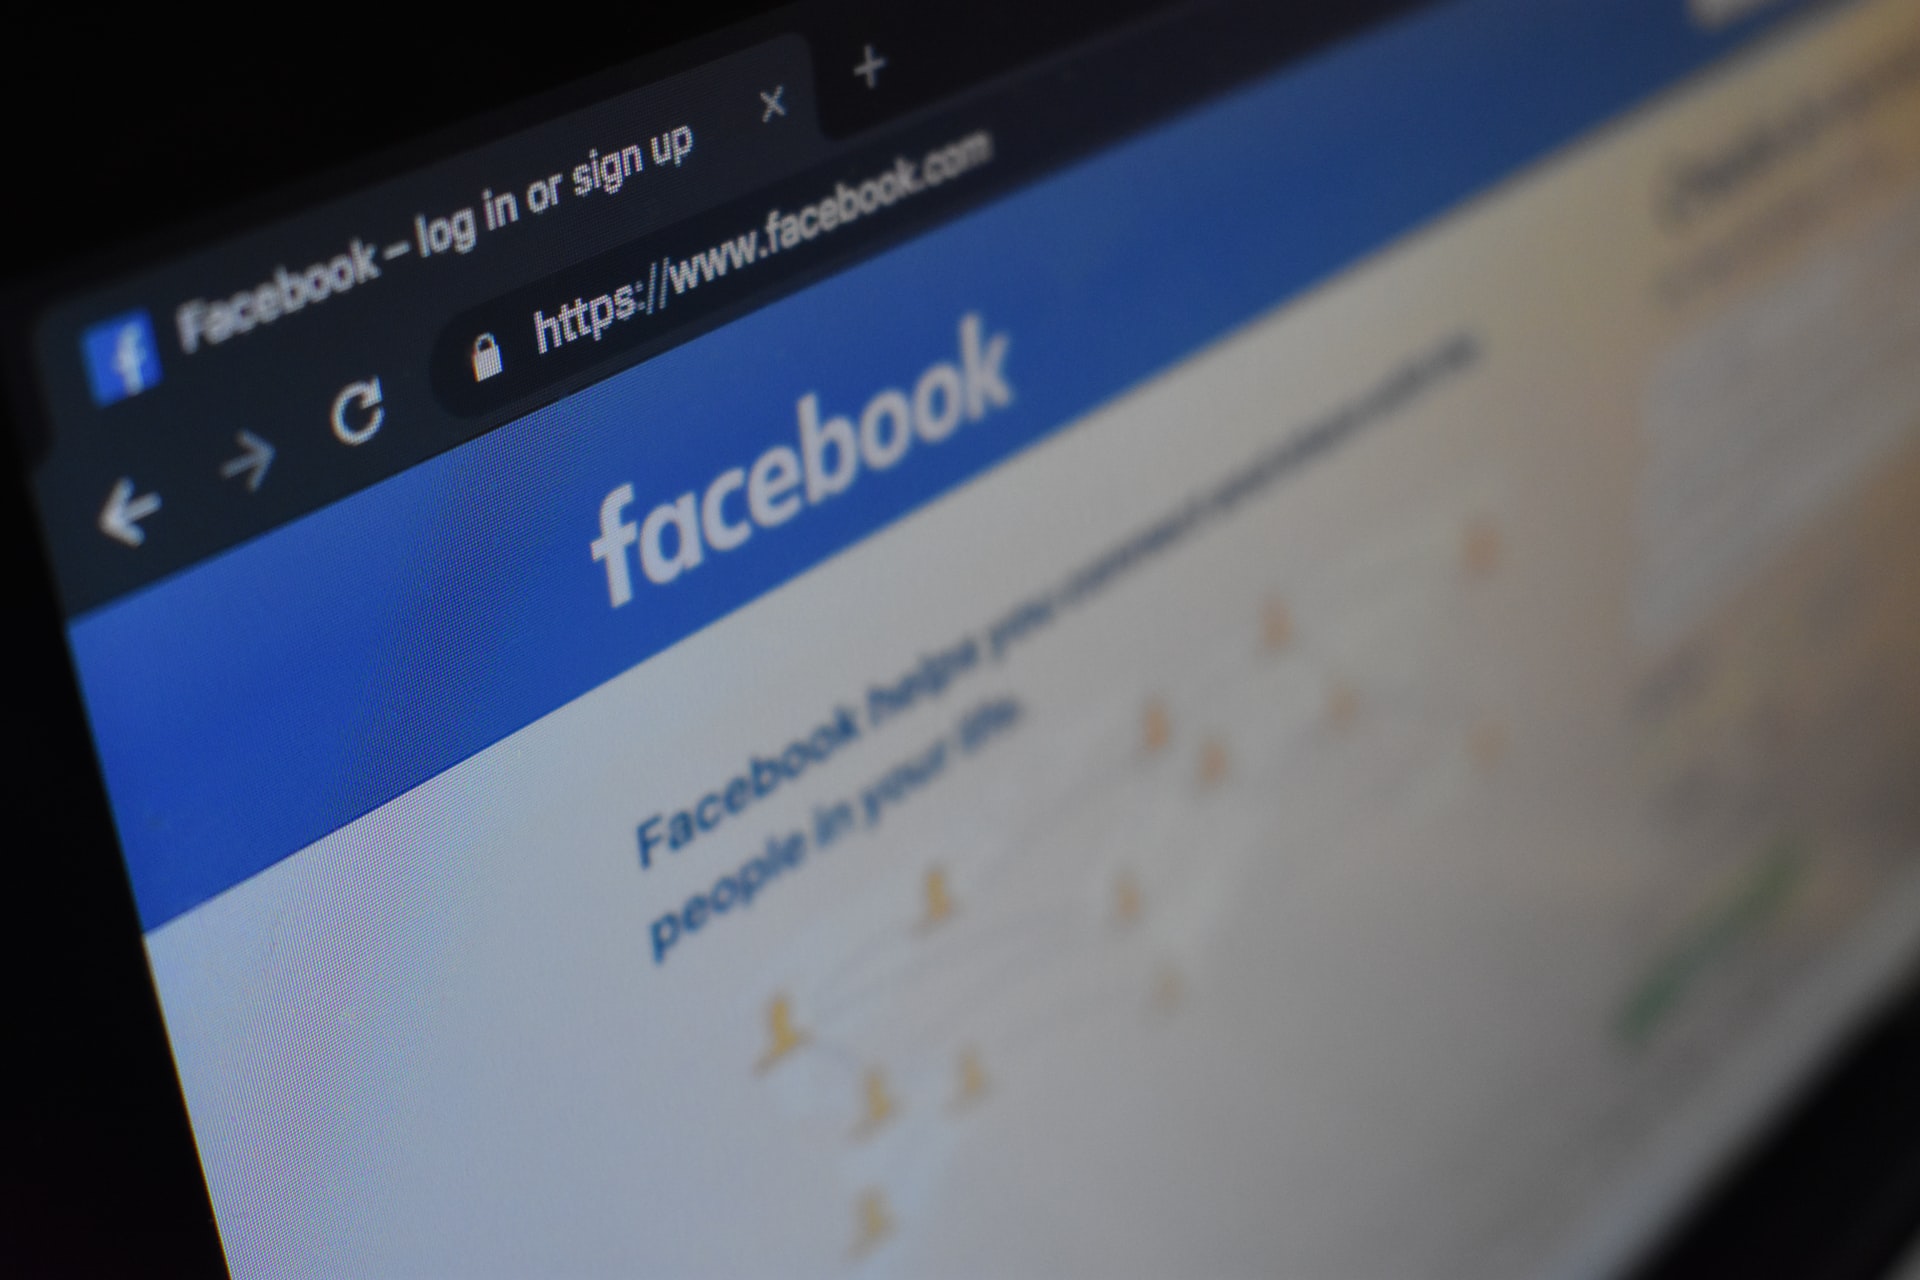 Fejsbuk postao opasan po javno zdravlje